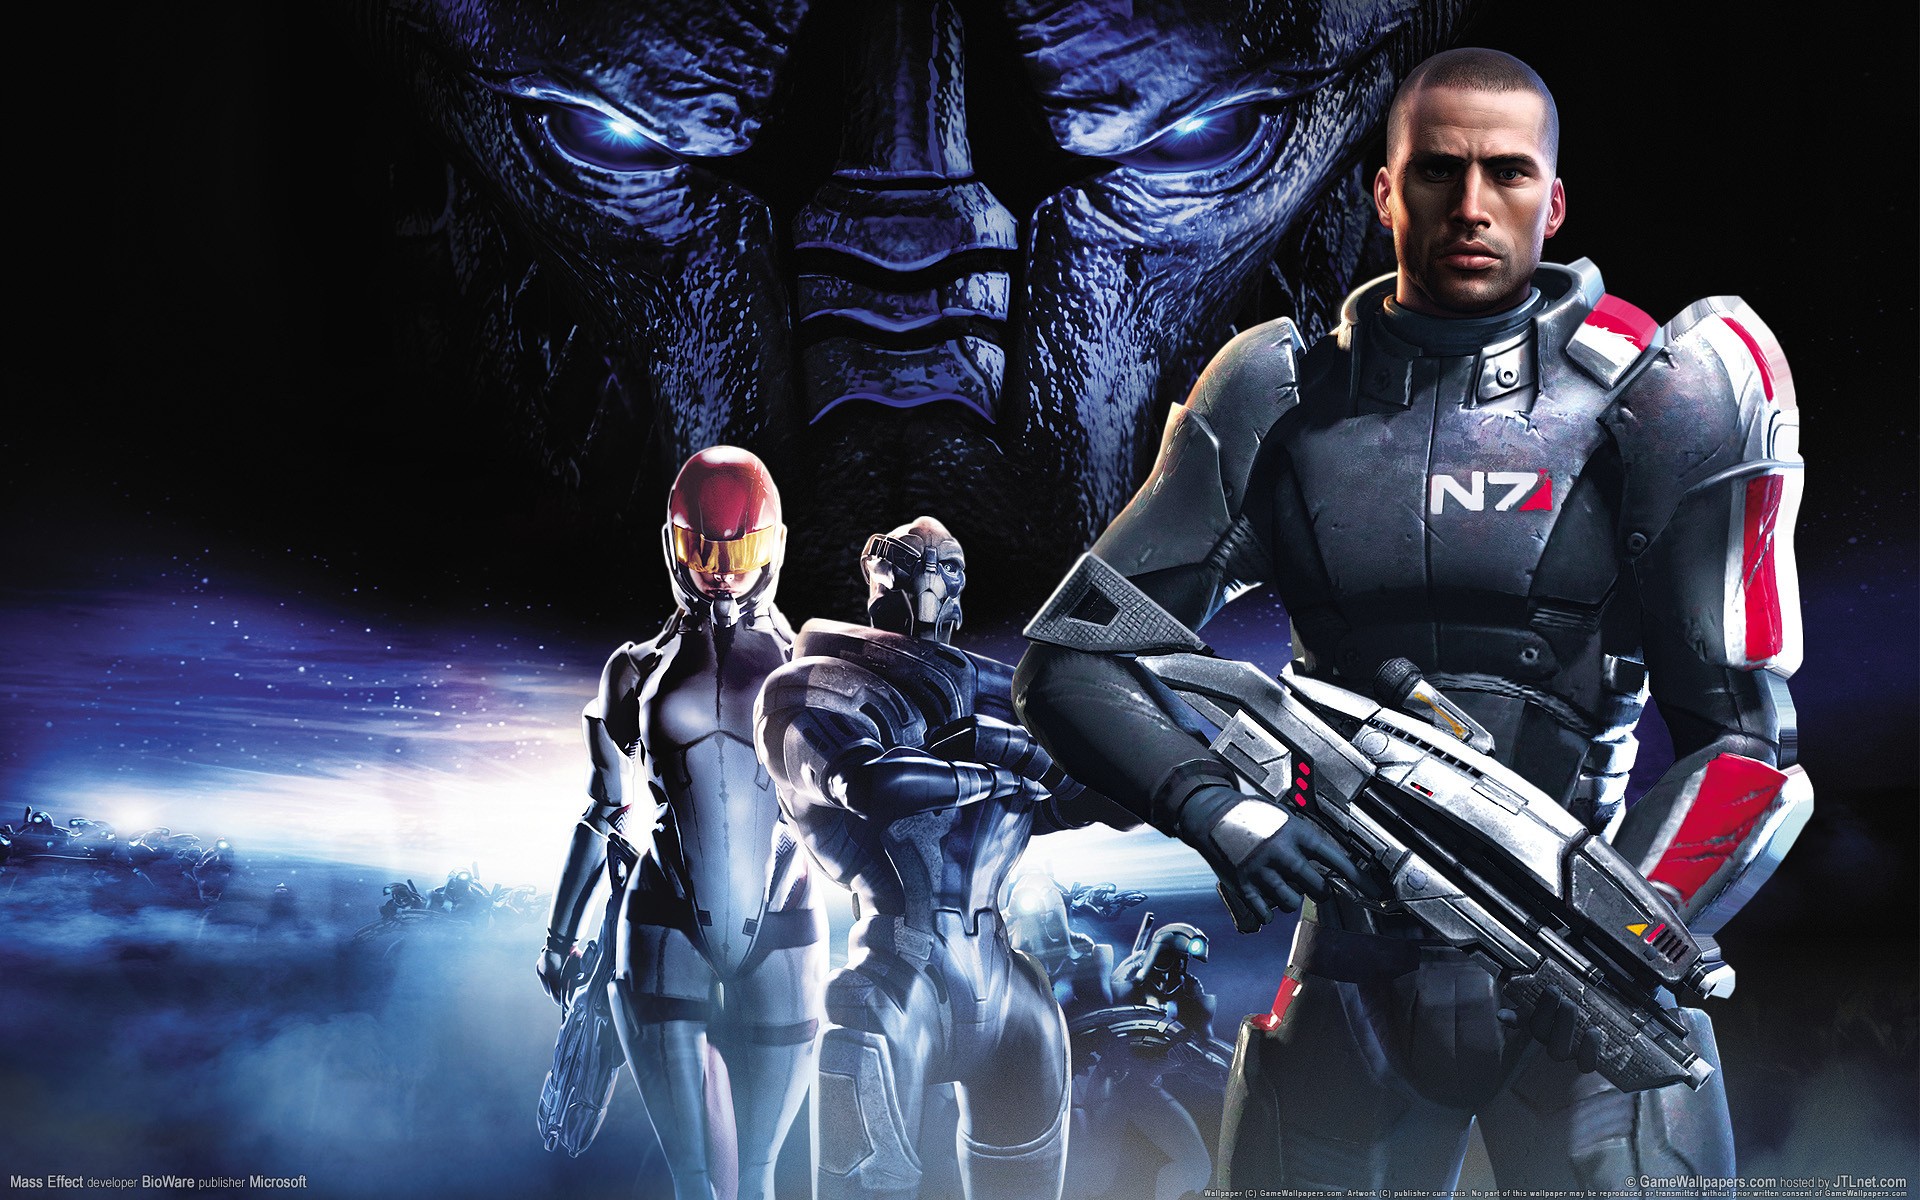 Mass Effect, Commander Shepard, Ashley Williams, Garrus Vakarian Wallpaper